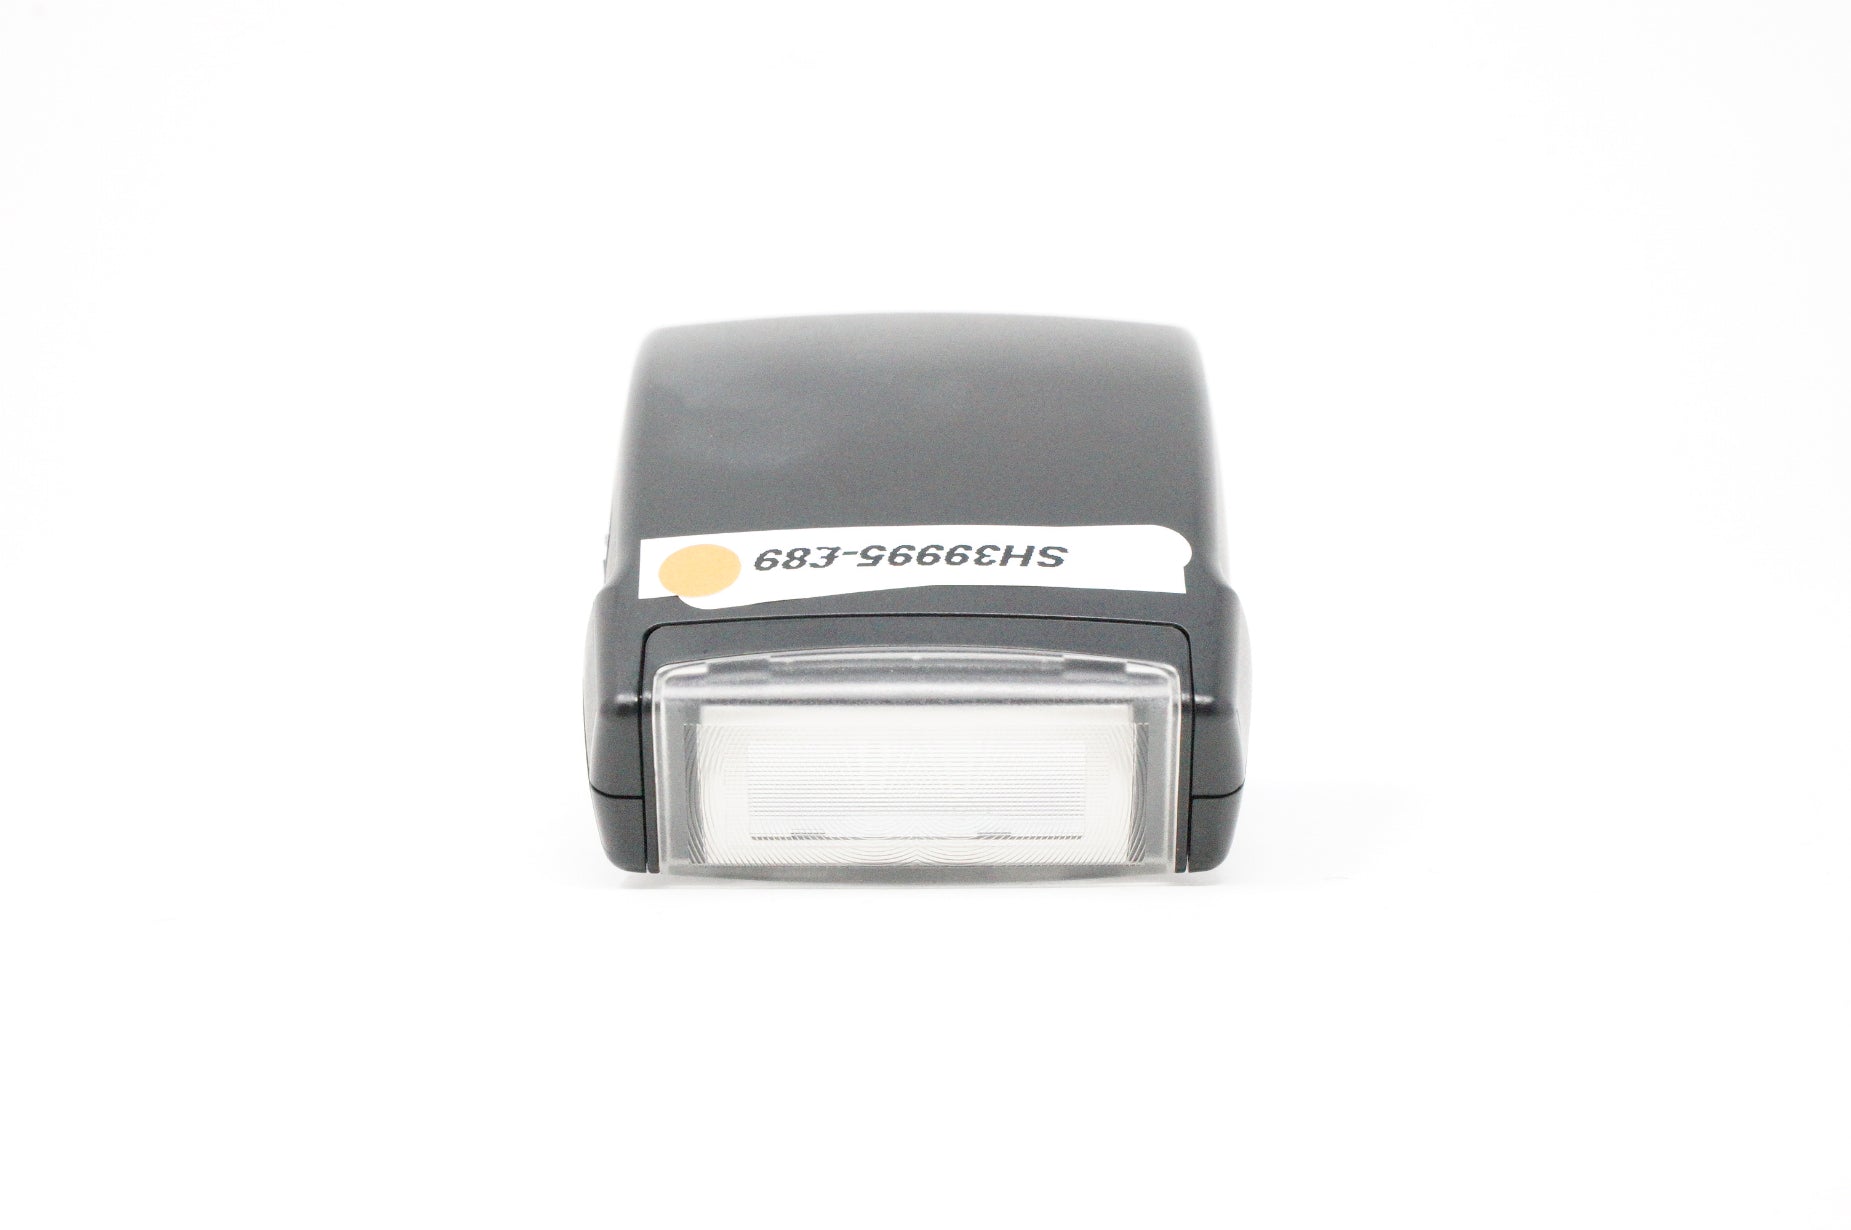 Used Nikon SB-400 Speedlight flash (Case SH39995)